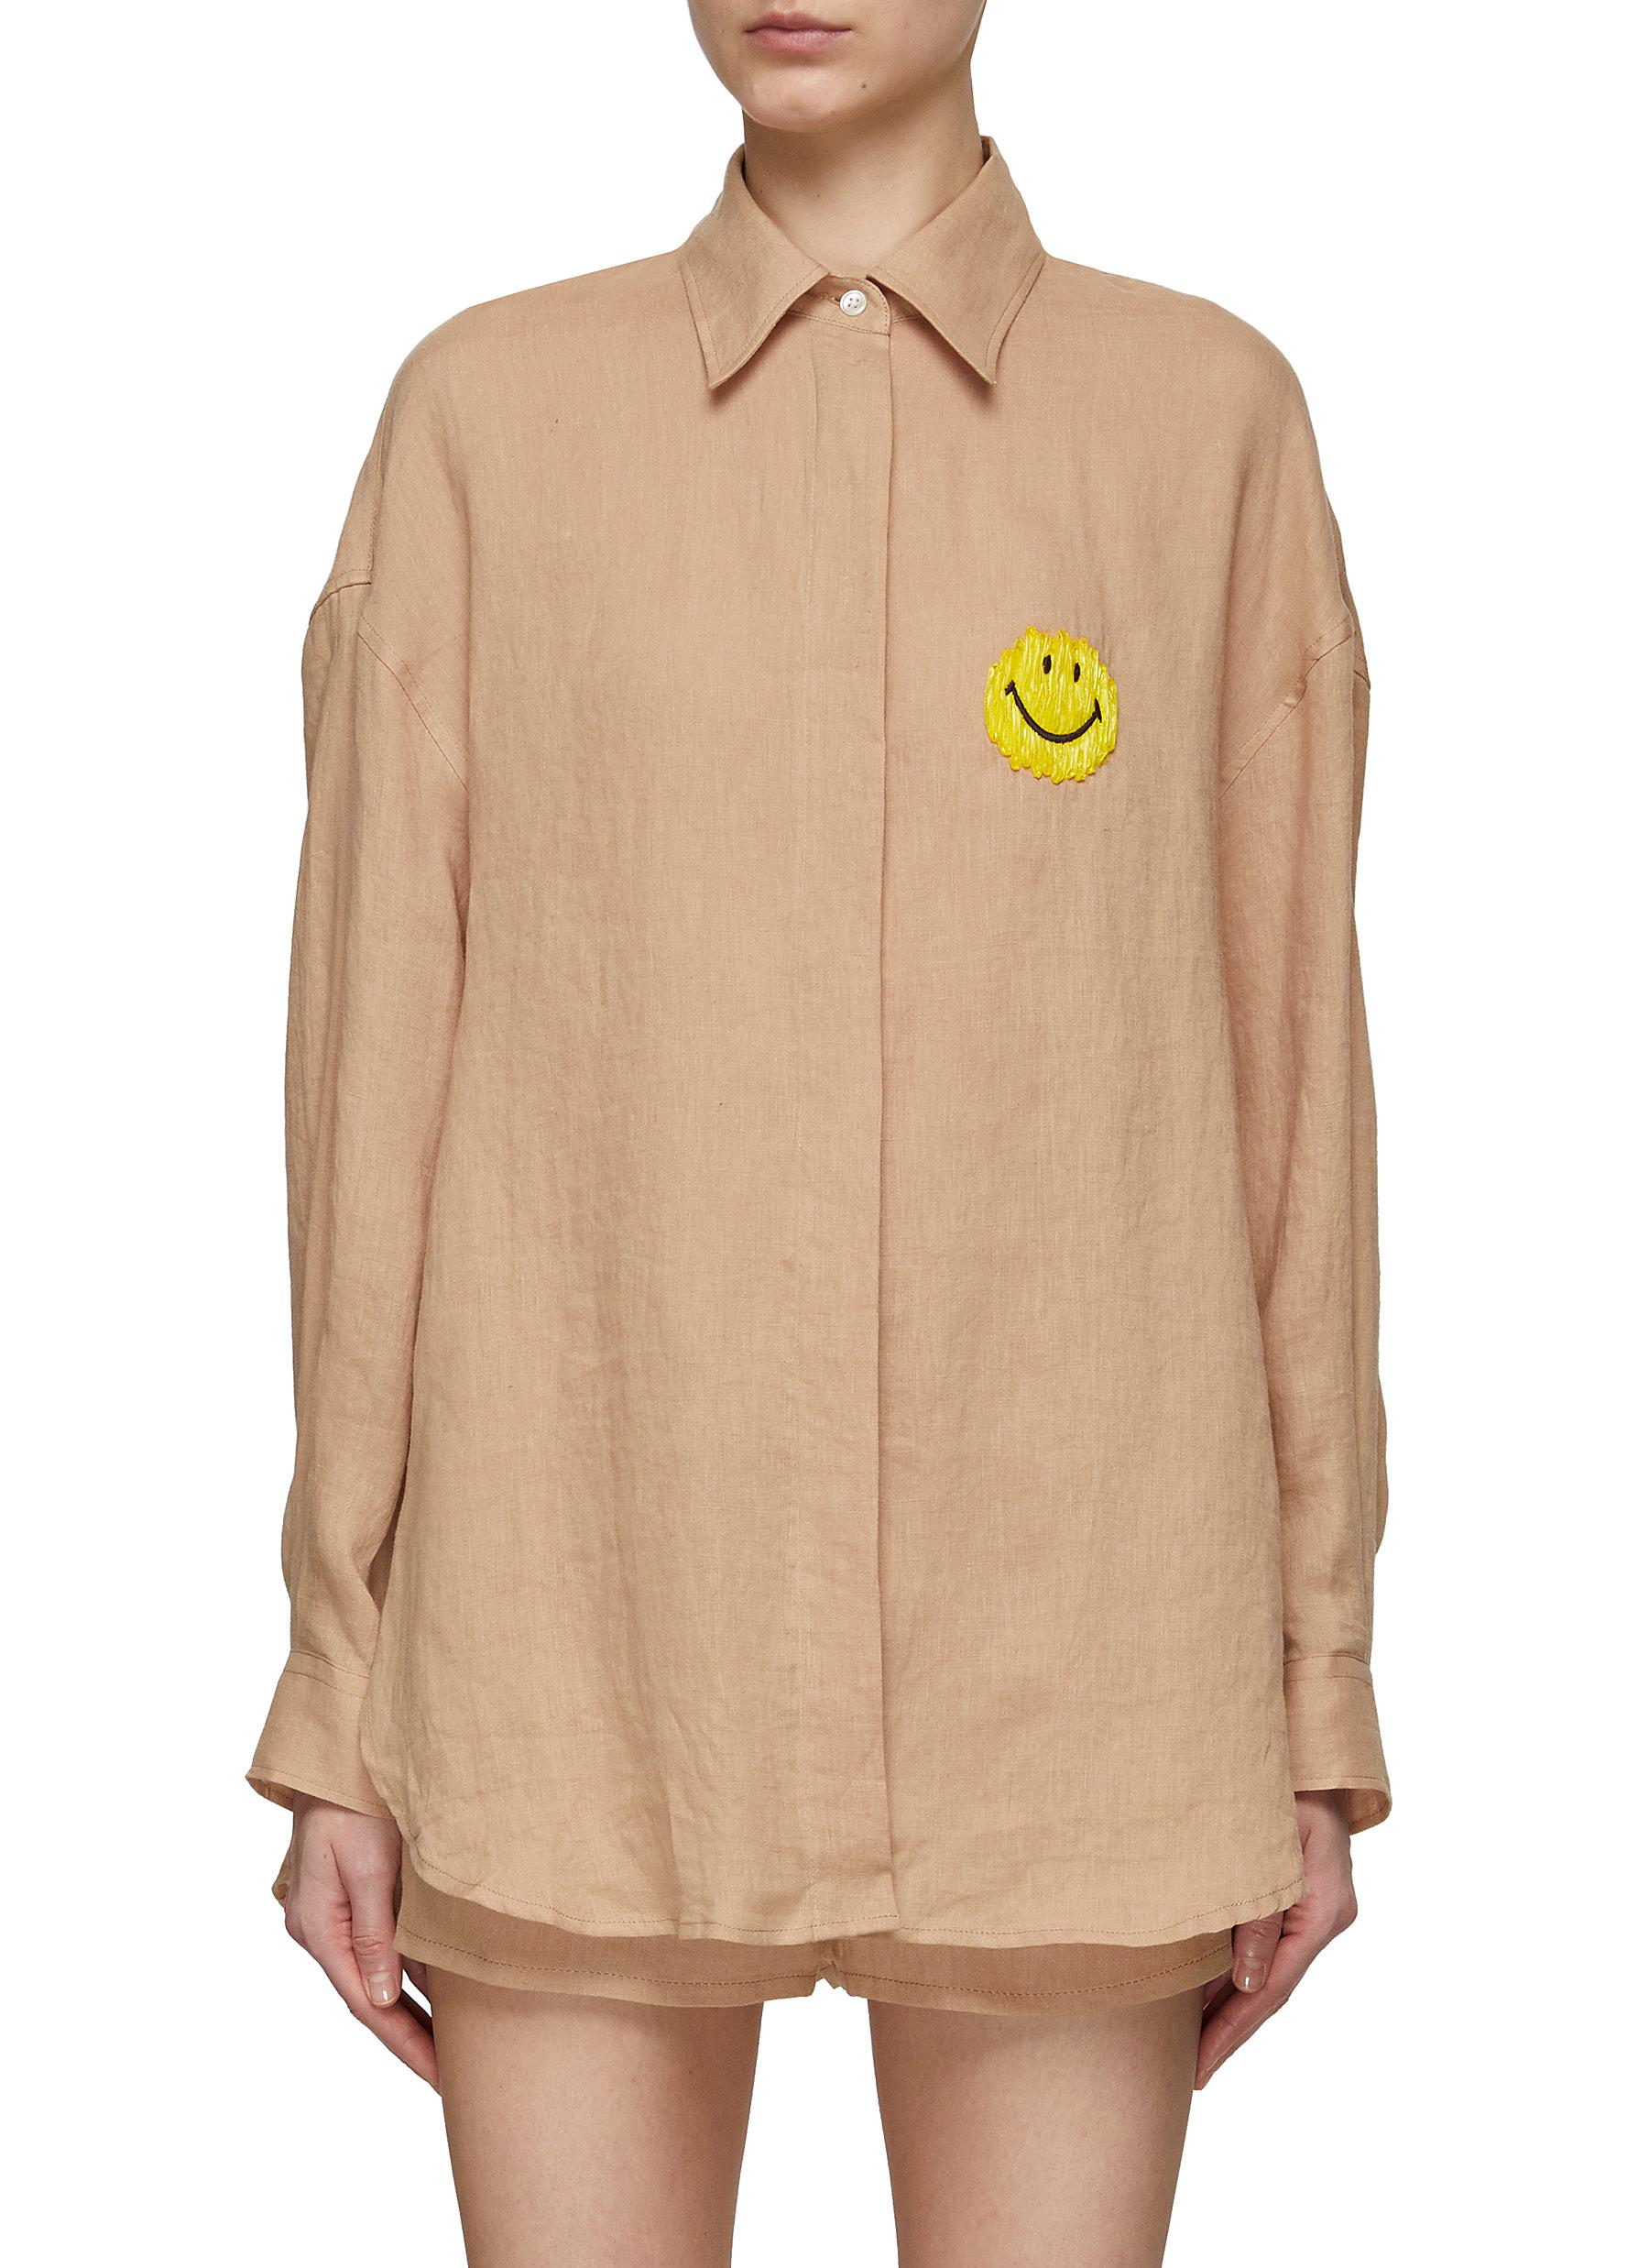 JOSHUA'S Smiley Face Appliqué Linen Button Up Shirt